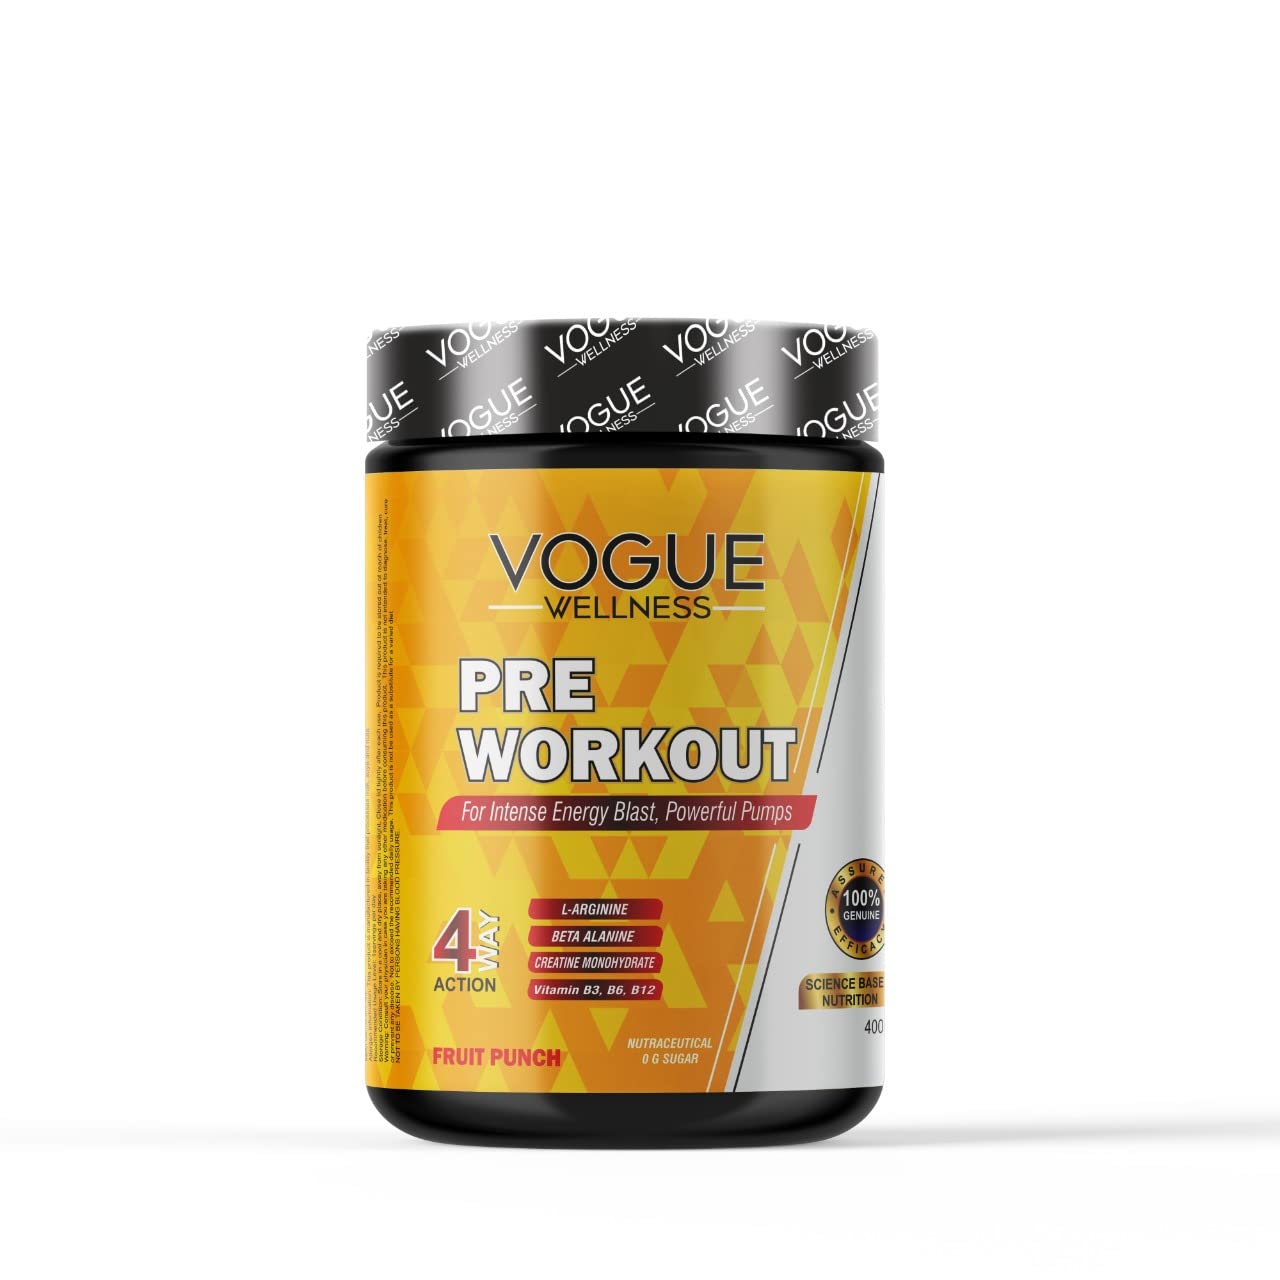 Vogue Wellness Pre Workout Supplement &...